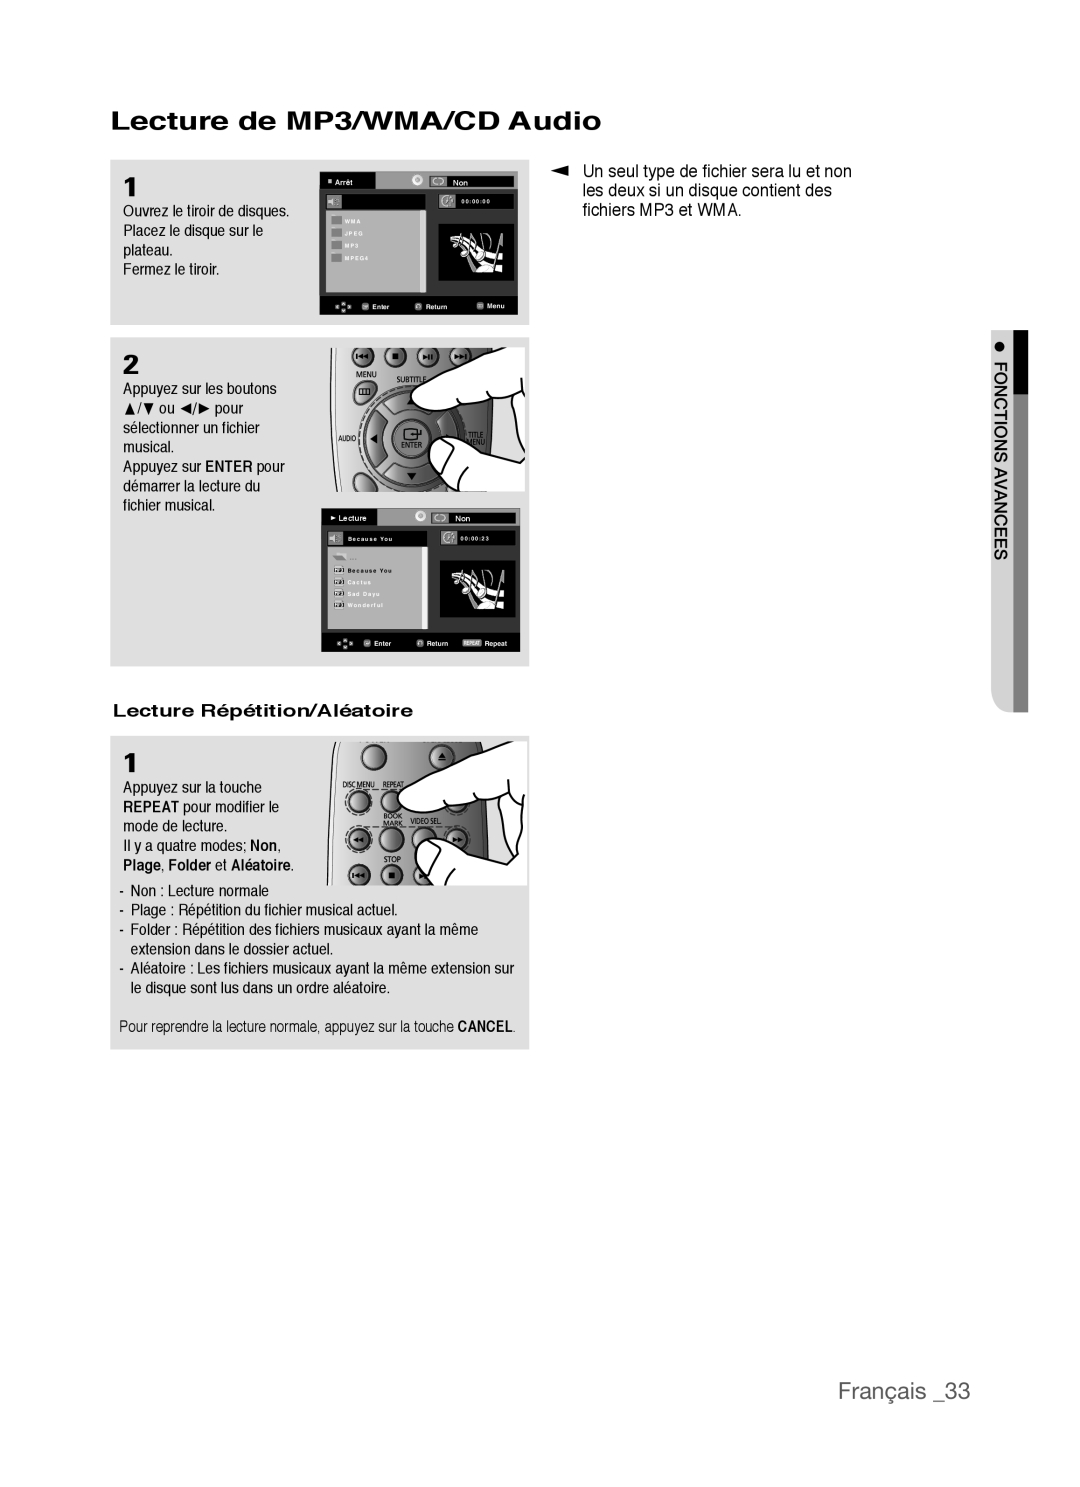 Samsung AK68-01770G, DVD-P390 Lecture de MP3/WMA/CD Audio, Français, fichiers MP3 et WMA, Lecture Répétition/Aléatoire 